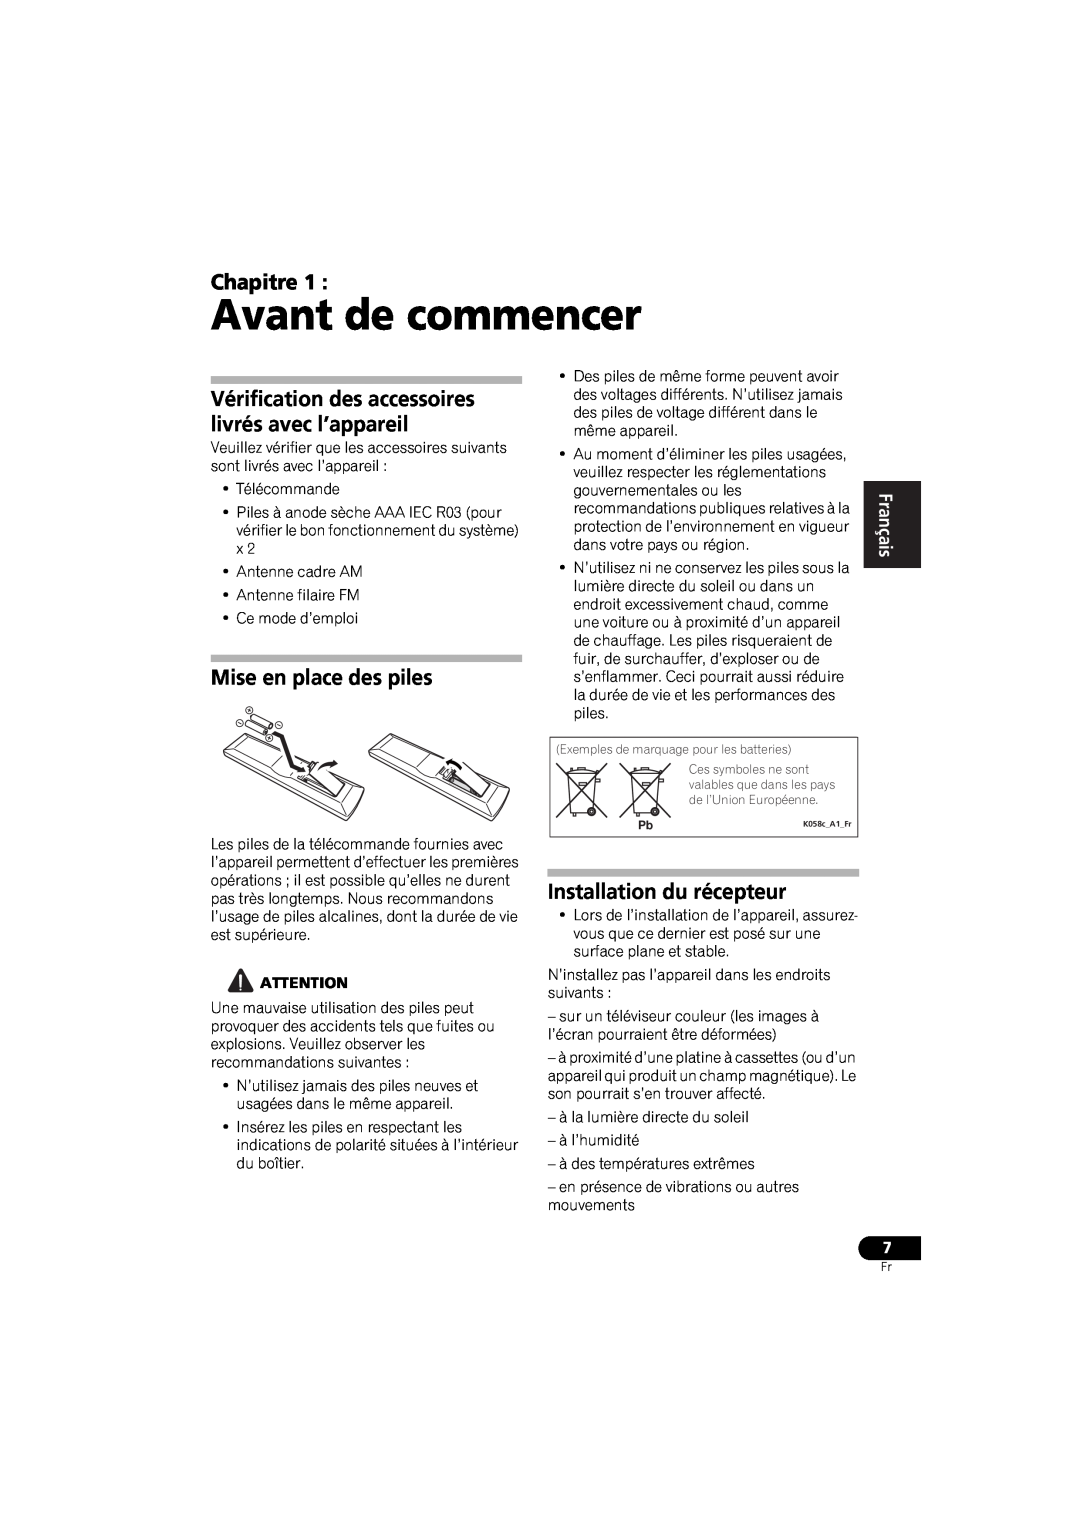 Pioneer VSX-520 manual Avant de commencer, Chapitre, Mise en place des piles, Installation du récepteur, English, Español 